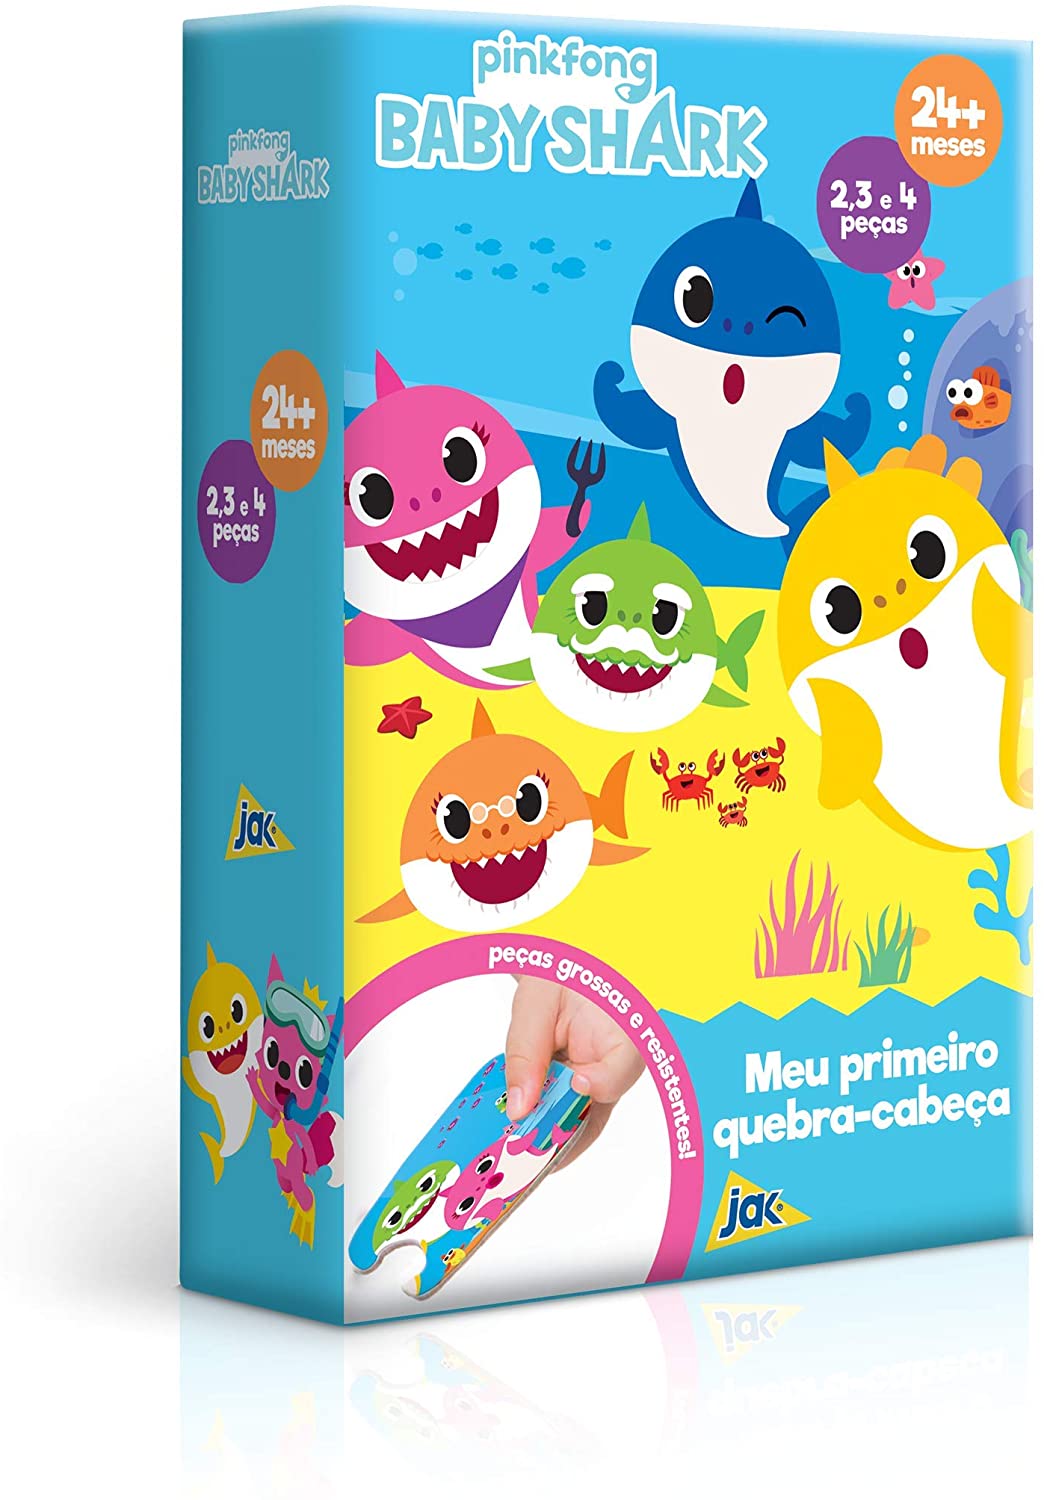 Jogo Quebra - Cabeça Educativo Tubarão Shark 24 Peças Montar - Pais e  Filhos - Quebra-Cabeça - Magazine Luiza